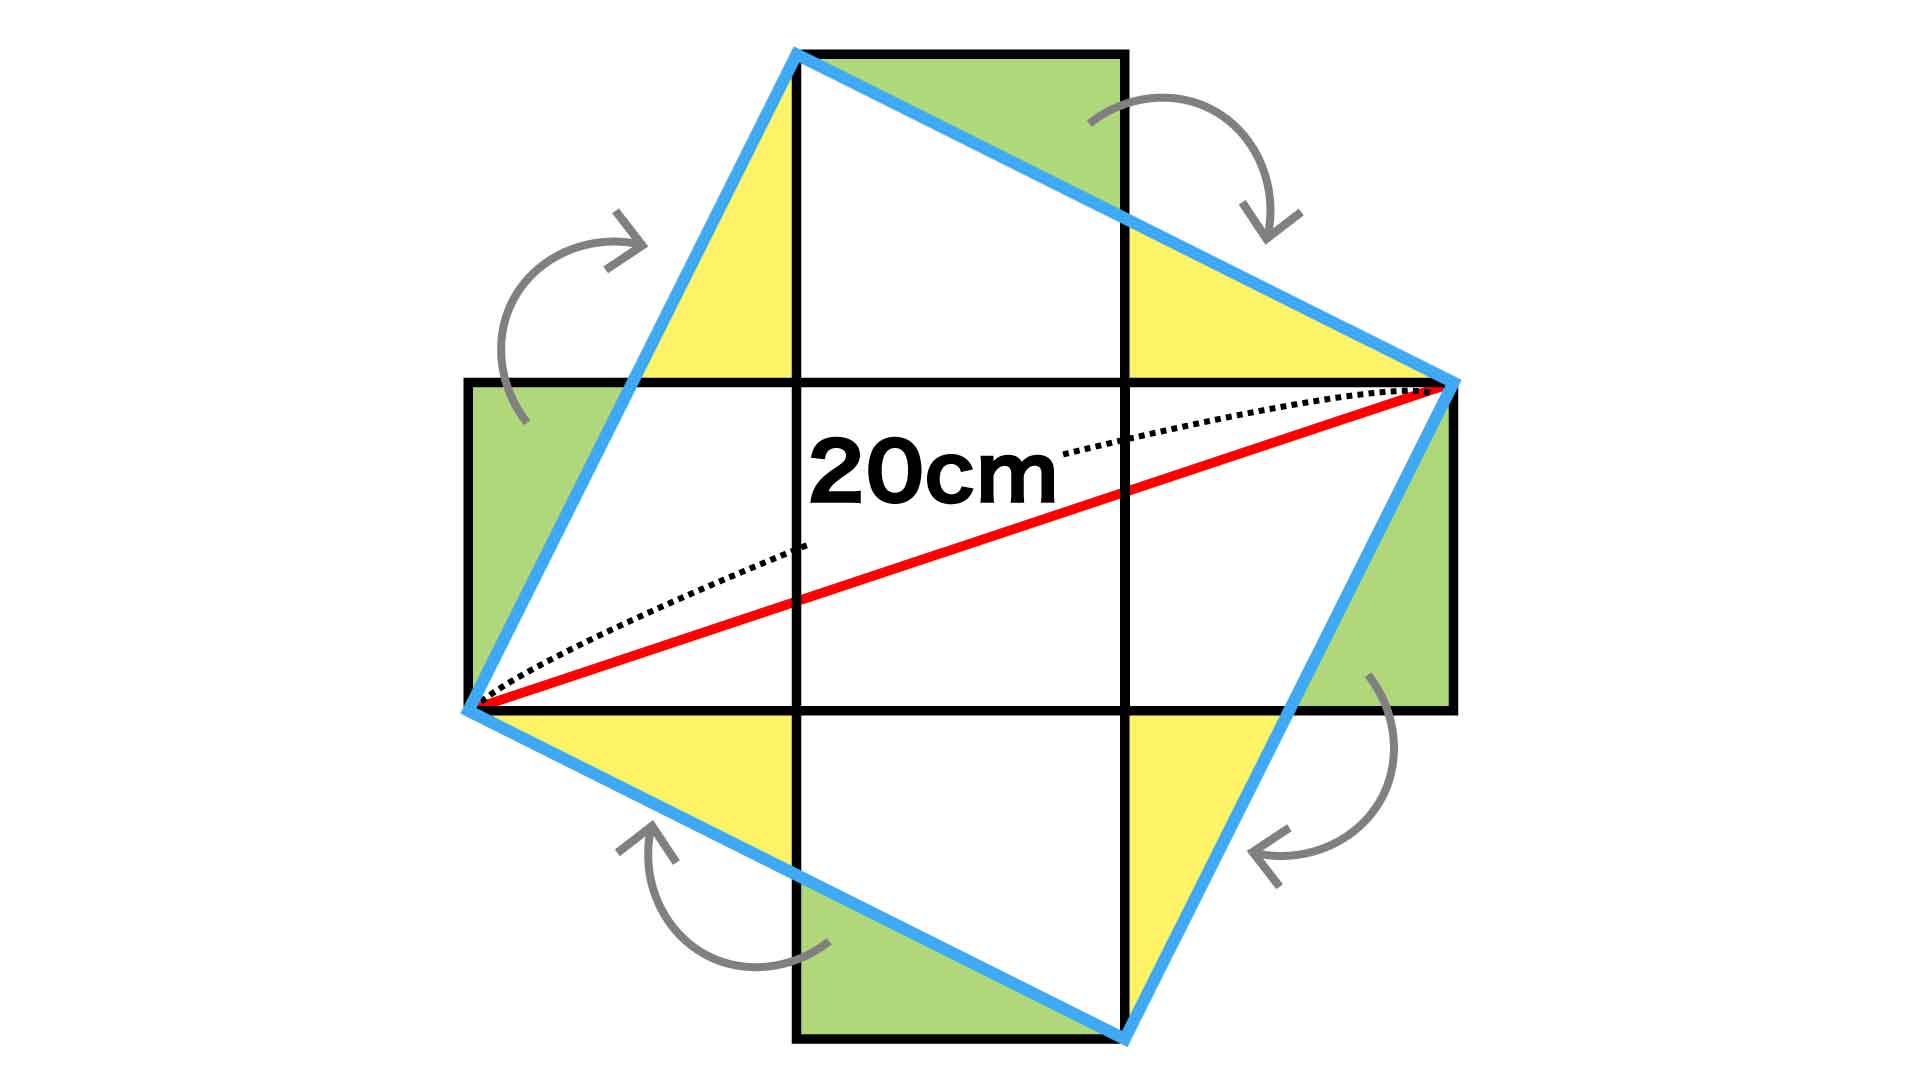 正方形の面積をひらめきで導け 小学5年生レベルの算数クイズに挑戦